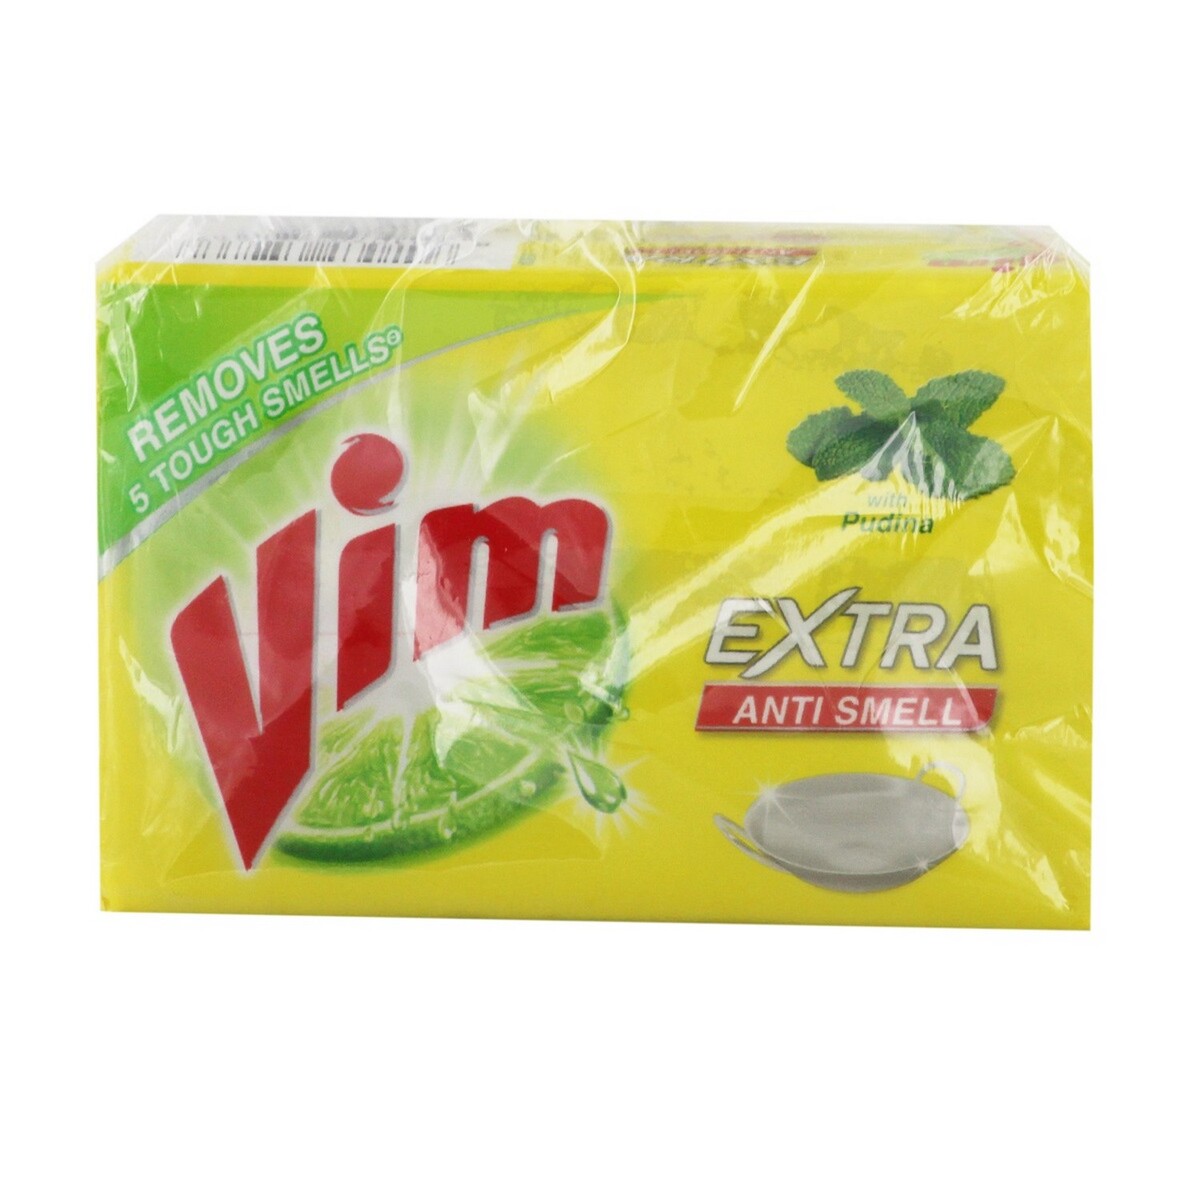 Vim Extra Anti Smell Bar 200g x 3pcs